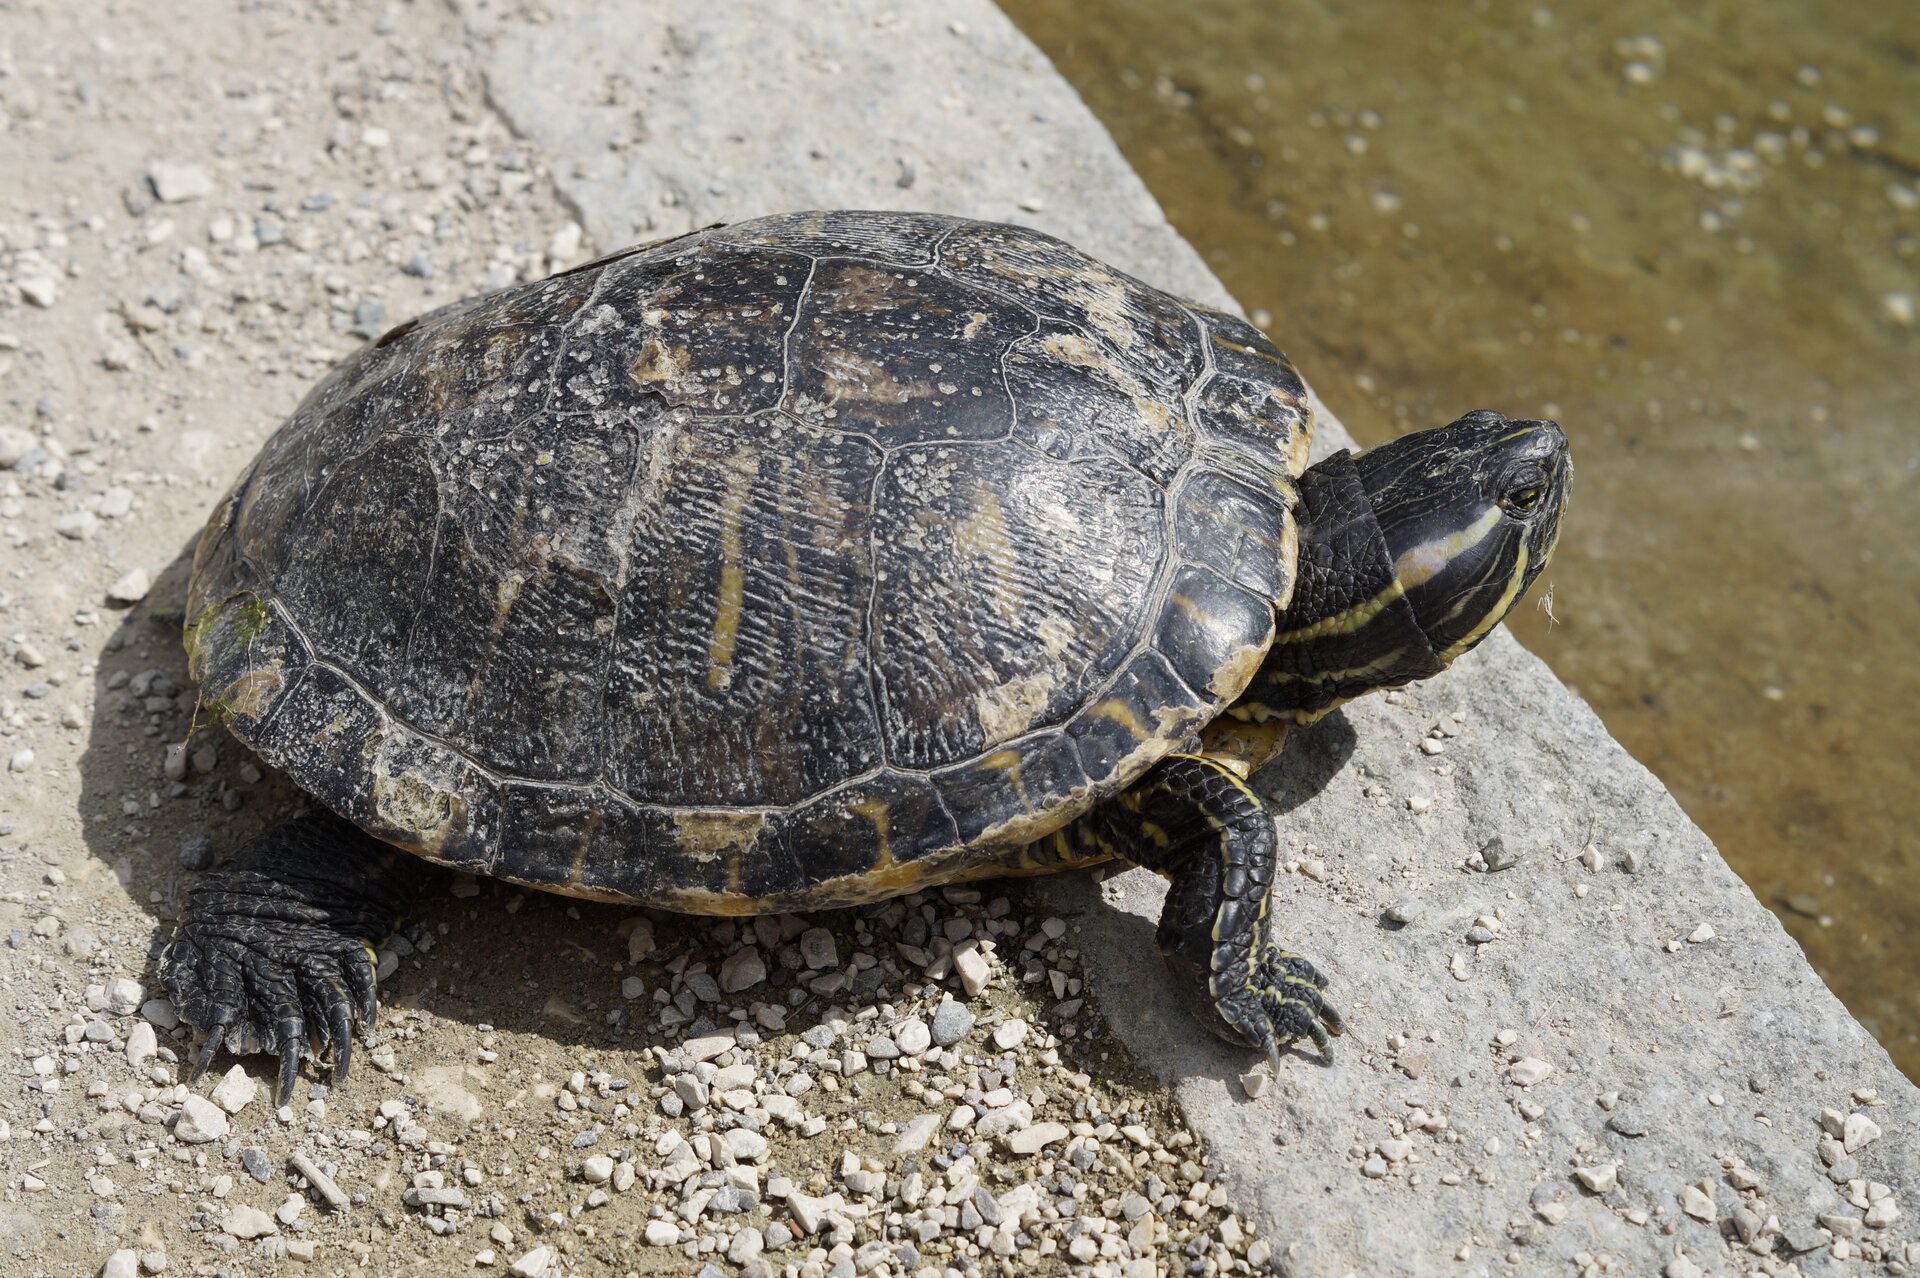 Fotografia przedstawia małego żółwia, wychodzącego z wody na kawałek drewna. Żółw ma małą głowę na grubej szyi, skierowany w lewo. Skorupa płaska, łuski szerokie, czarno brązowe. Łapy masywne na końcach.